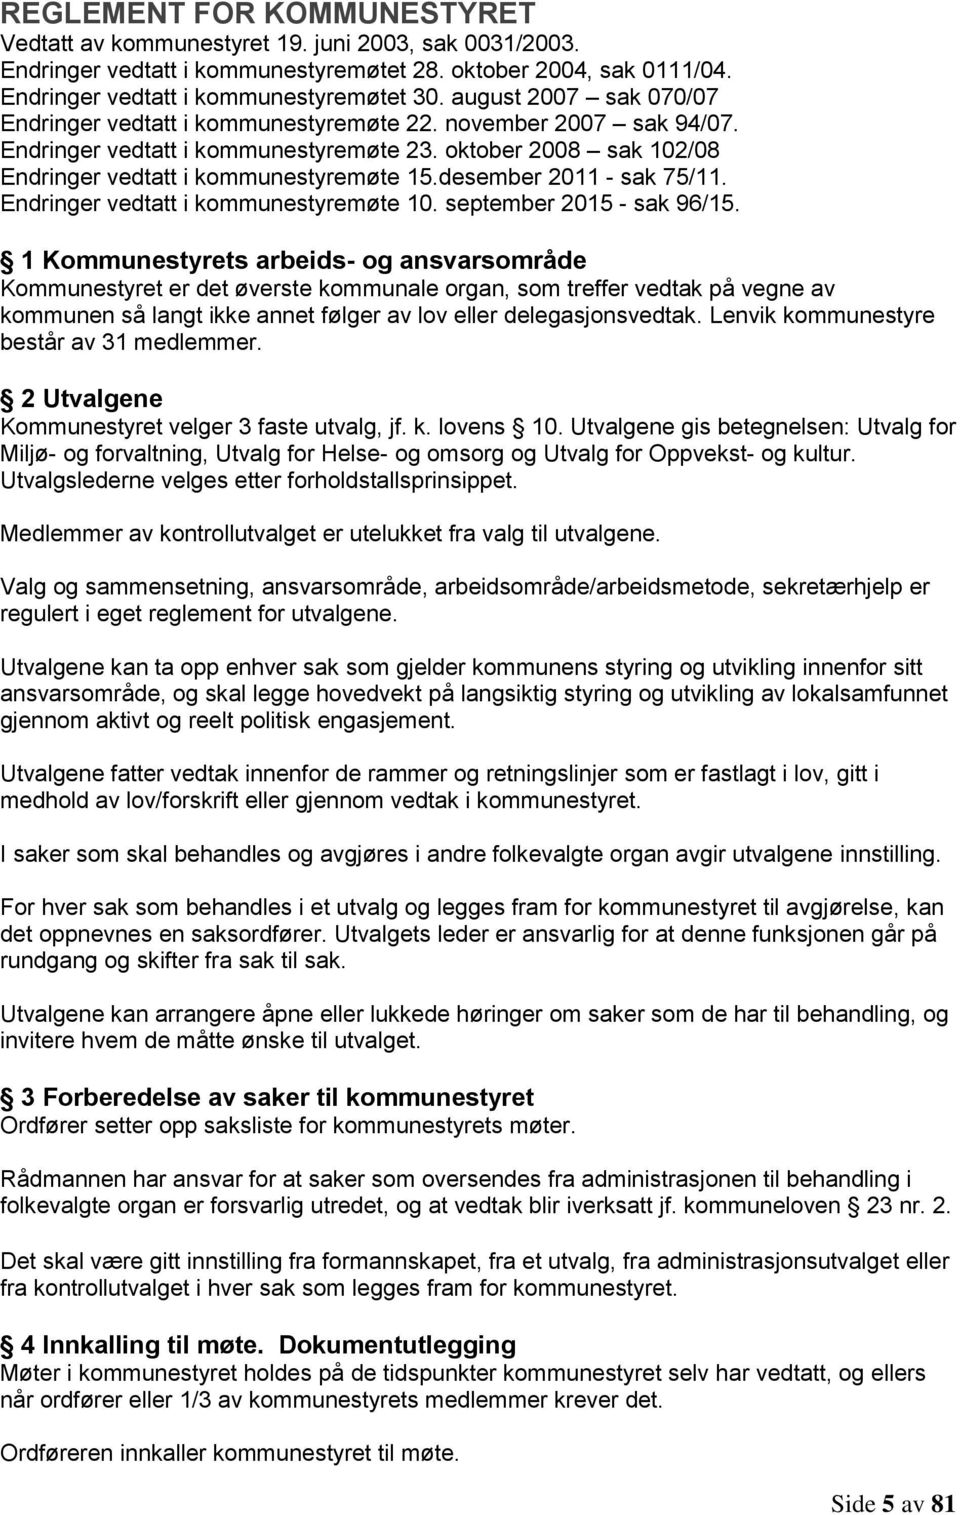 desember 2011 - sak 75/11. Endringer vedtatt i kommunestyremøte 10. september 2015 - sak 96/15.